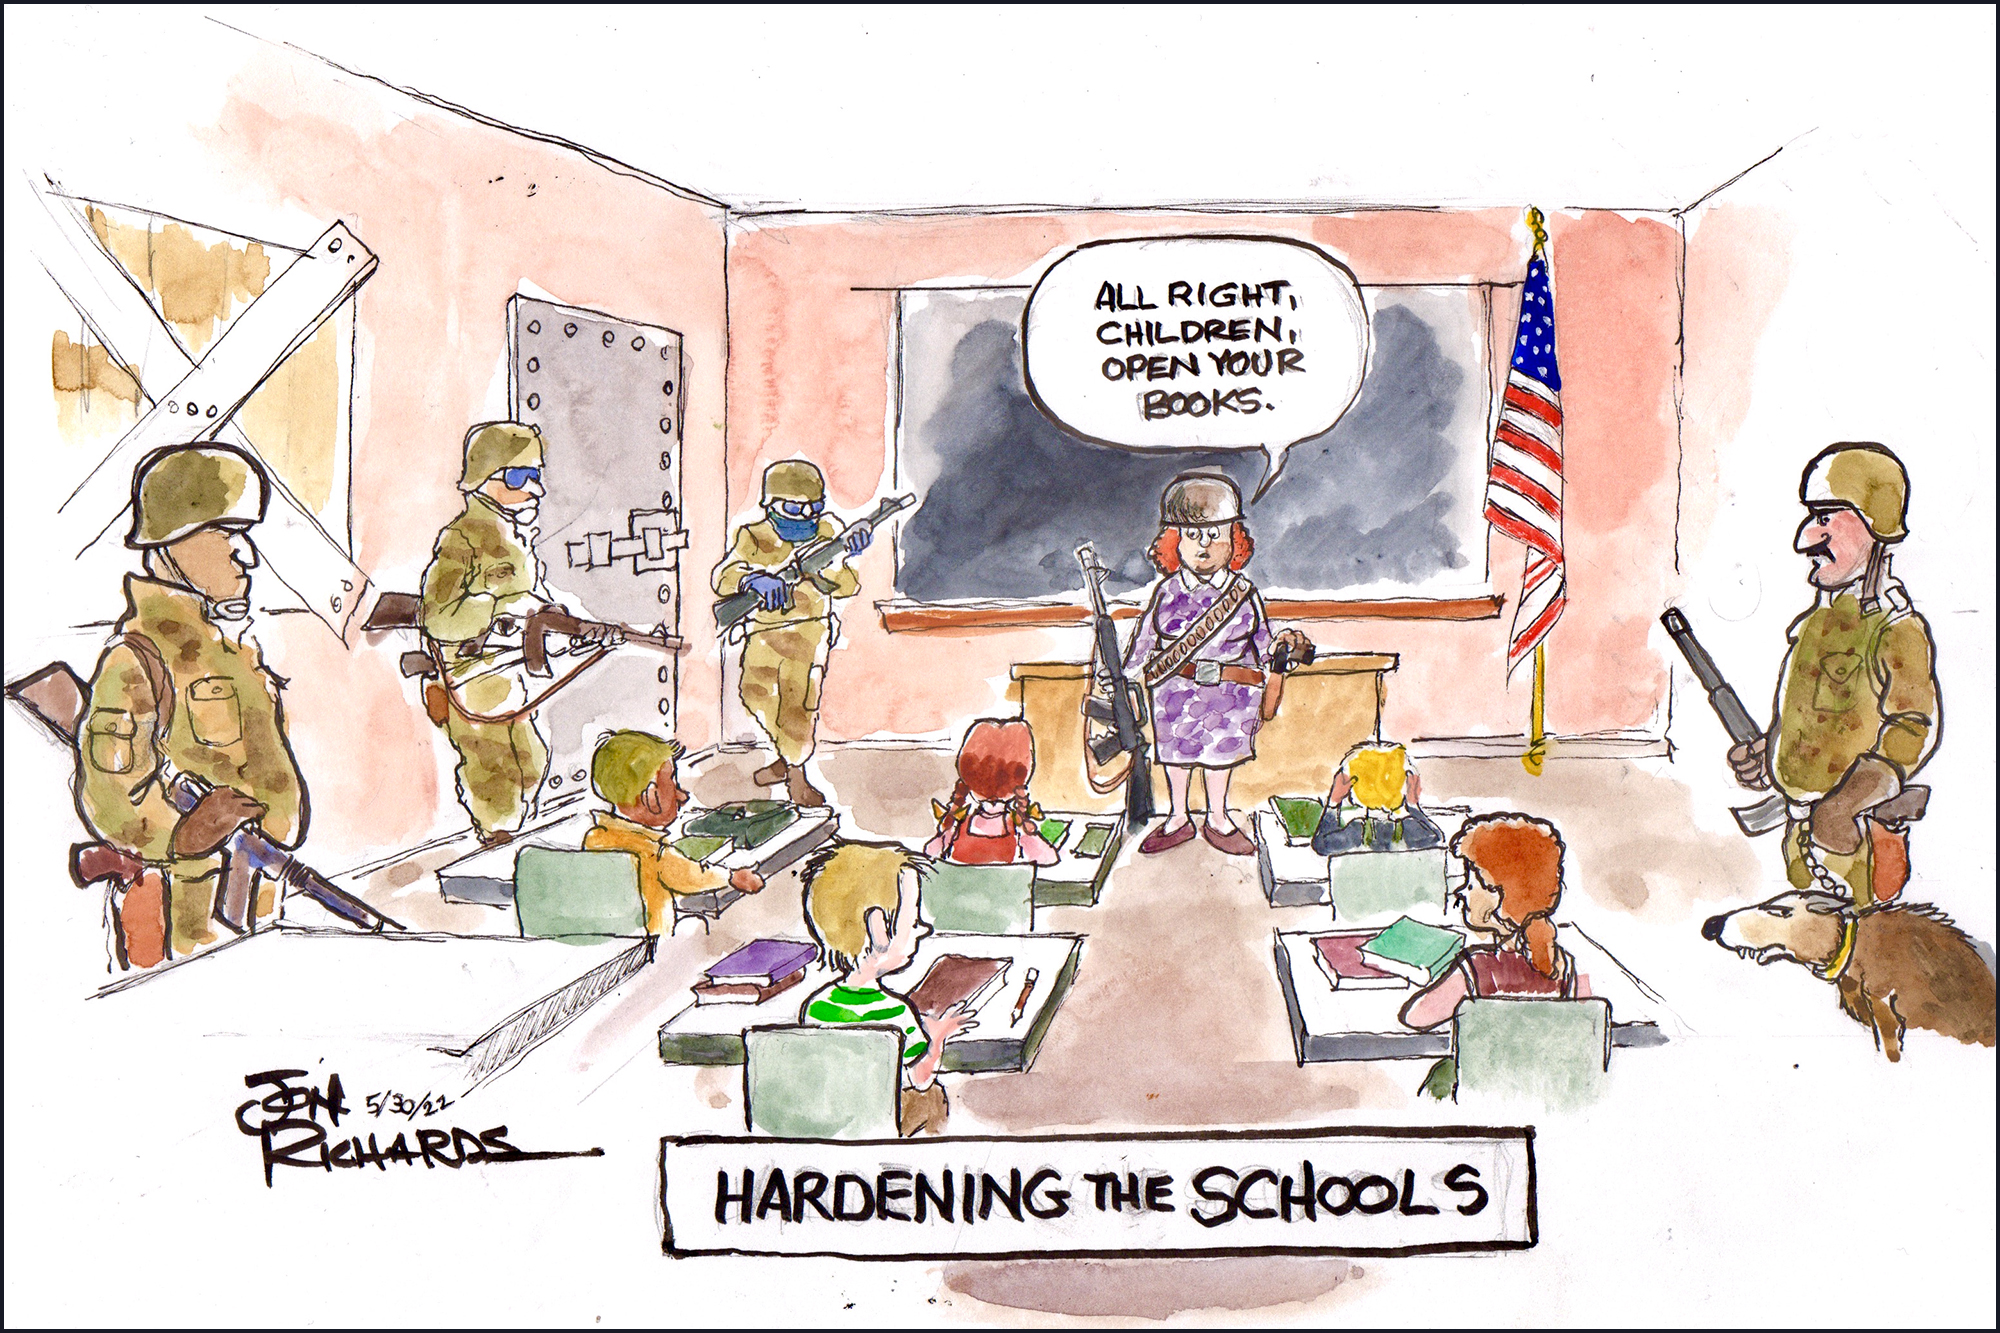 School safety, AR-15, guns